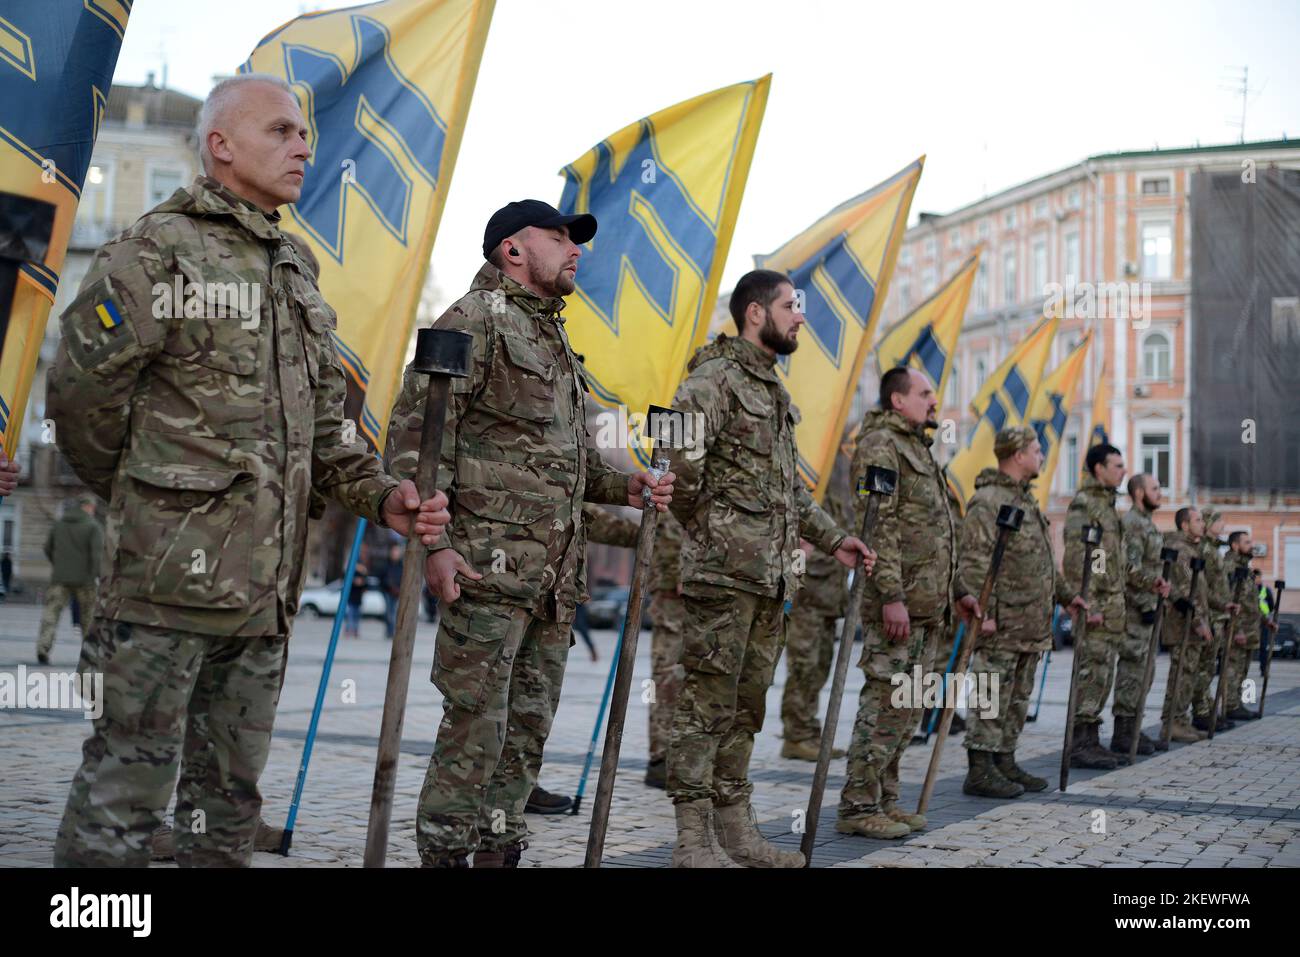 KIEV, UCRAINA - 13 NOVEMBRE 2022 - i soldati del reggimento di Azov detengono bandiere per commemorare i loro fratelli caduti in armi durante il Reggimento celeste di Azov in piazza Sofiyska, Kyiv, capitale dell'Ucraina. Foto Stock